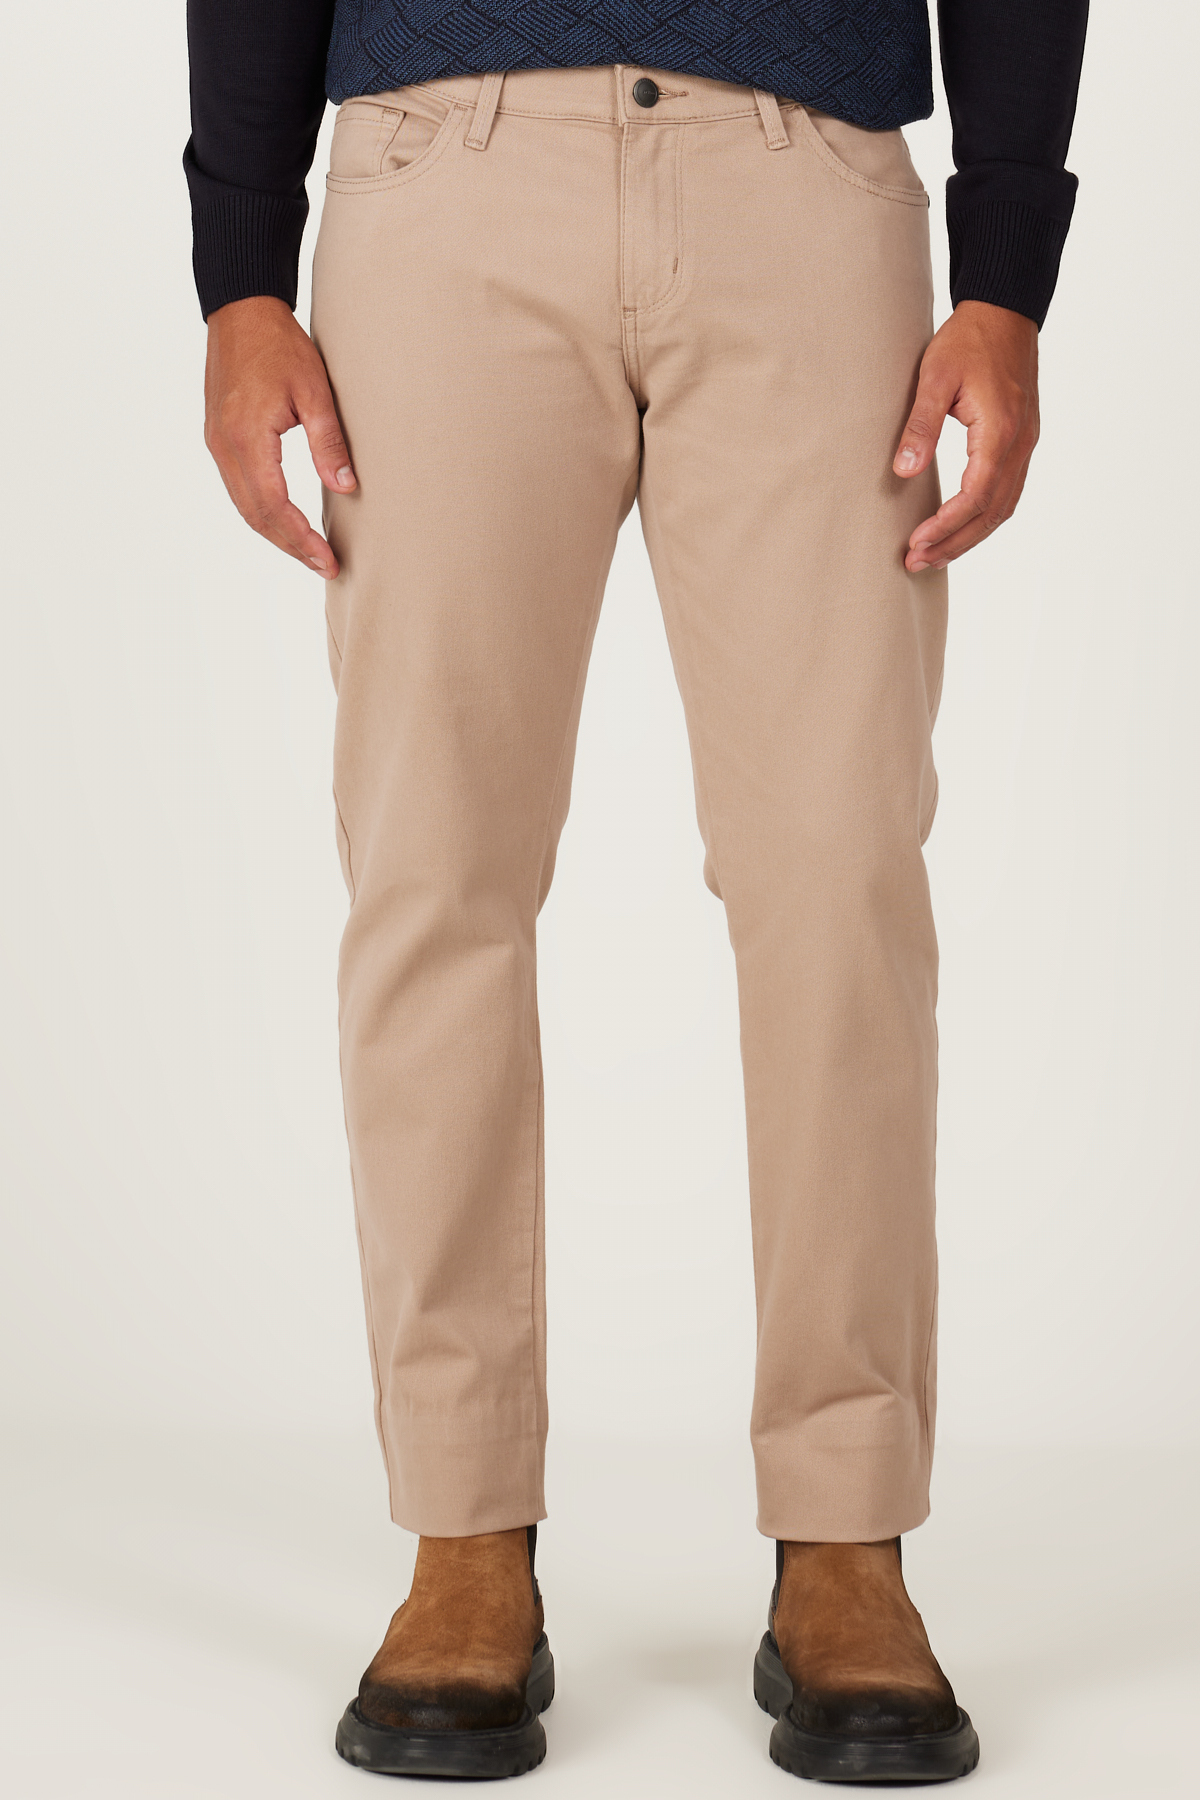 Levně AC&Co / Altınyıldız Classics Men's Beige Slim Fit Slim Fit 5 Pocket Cotton Canvas Flexible Chino Trousers